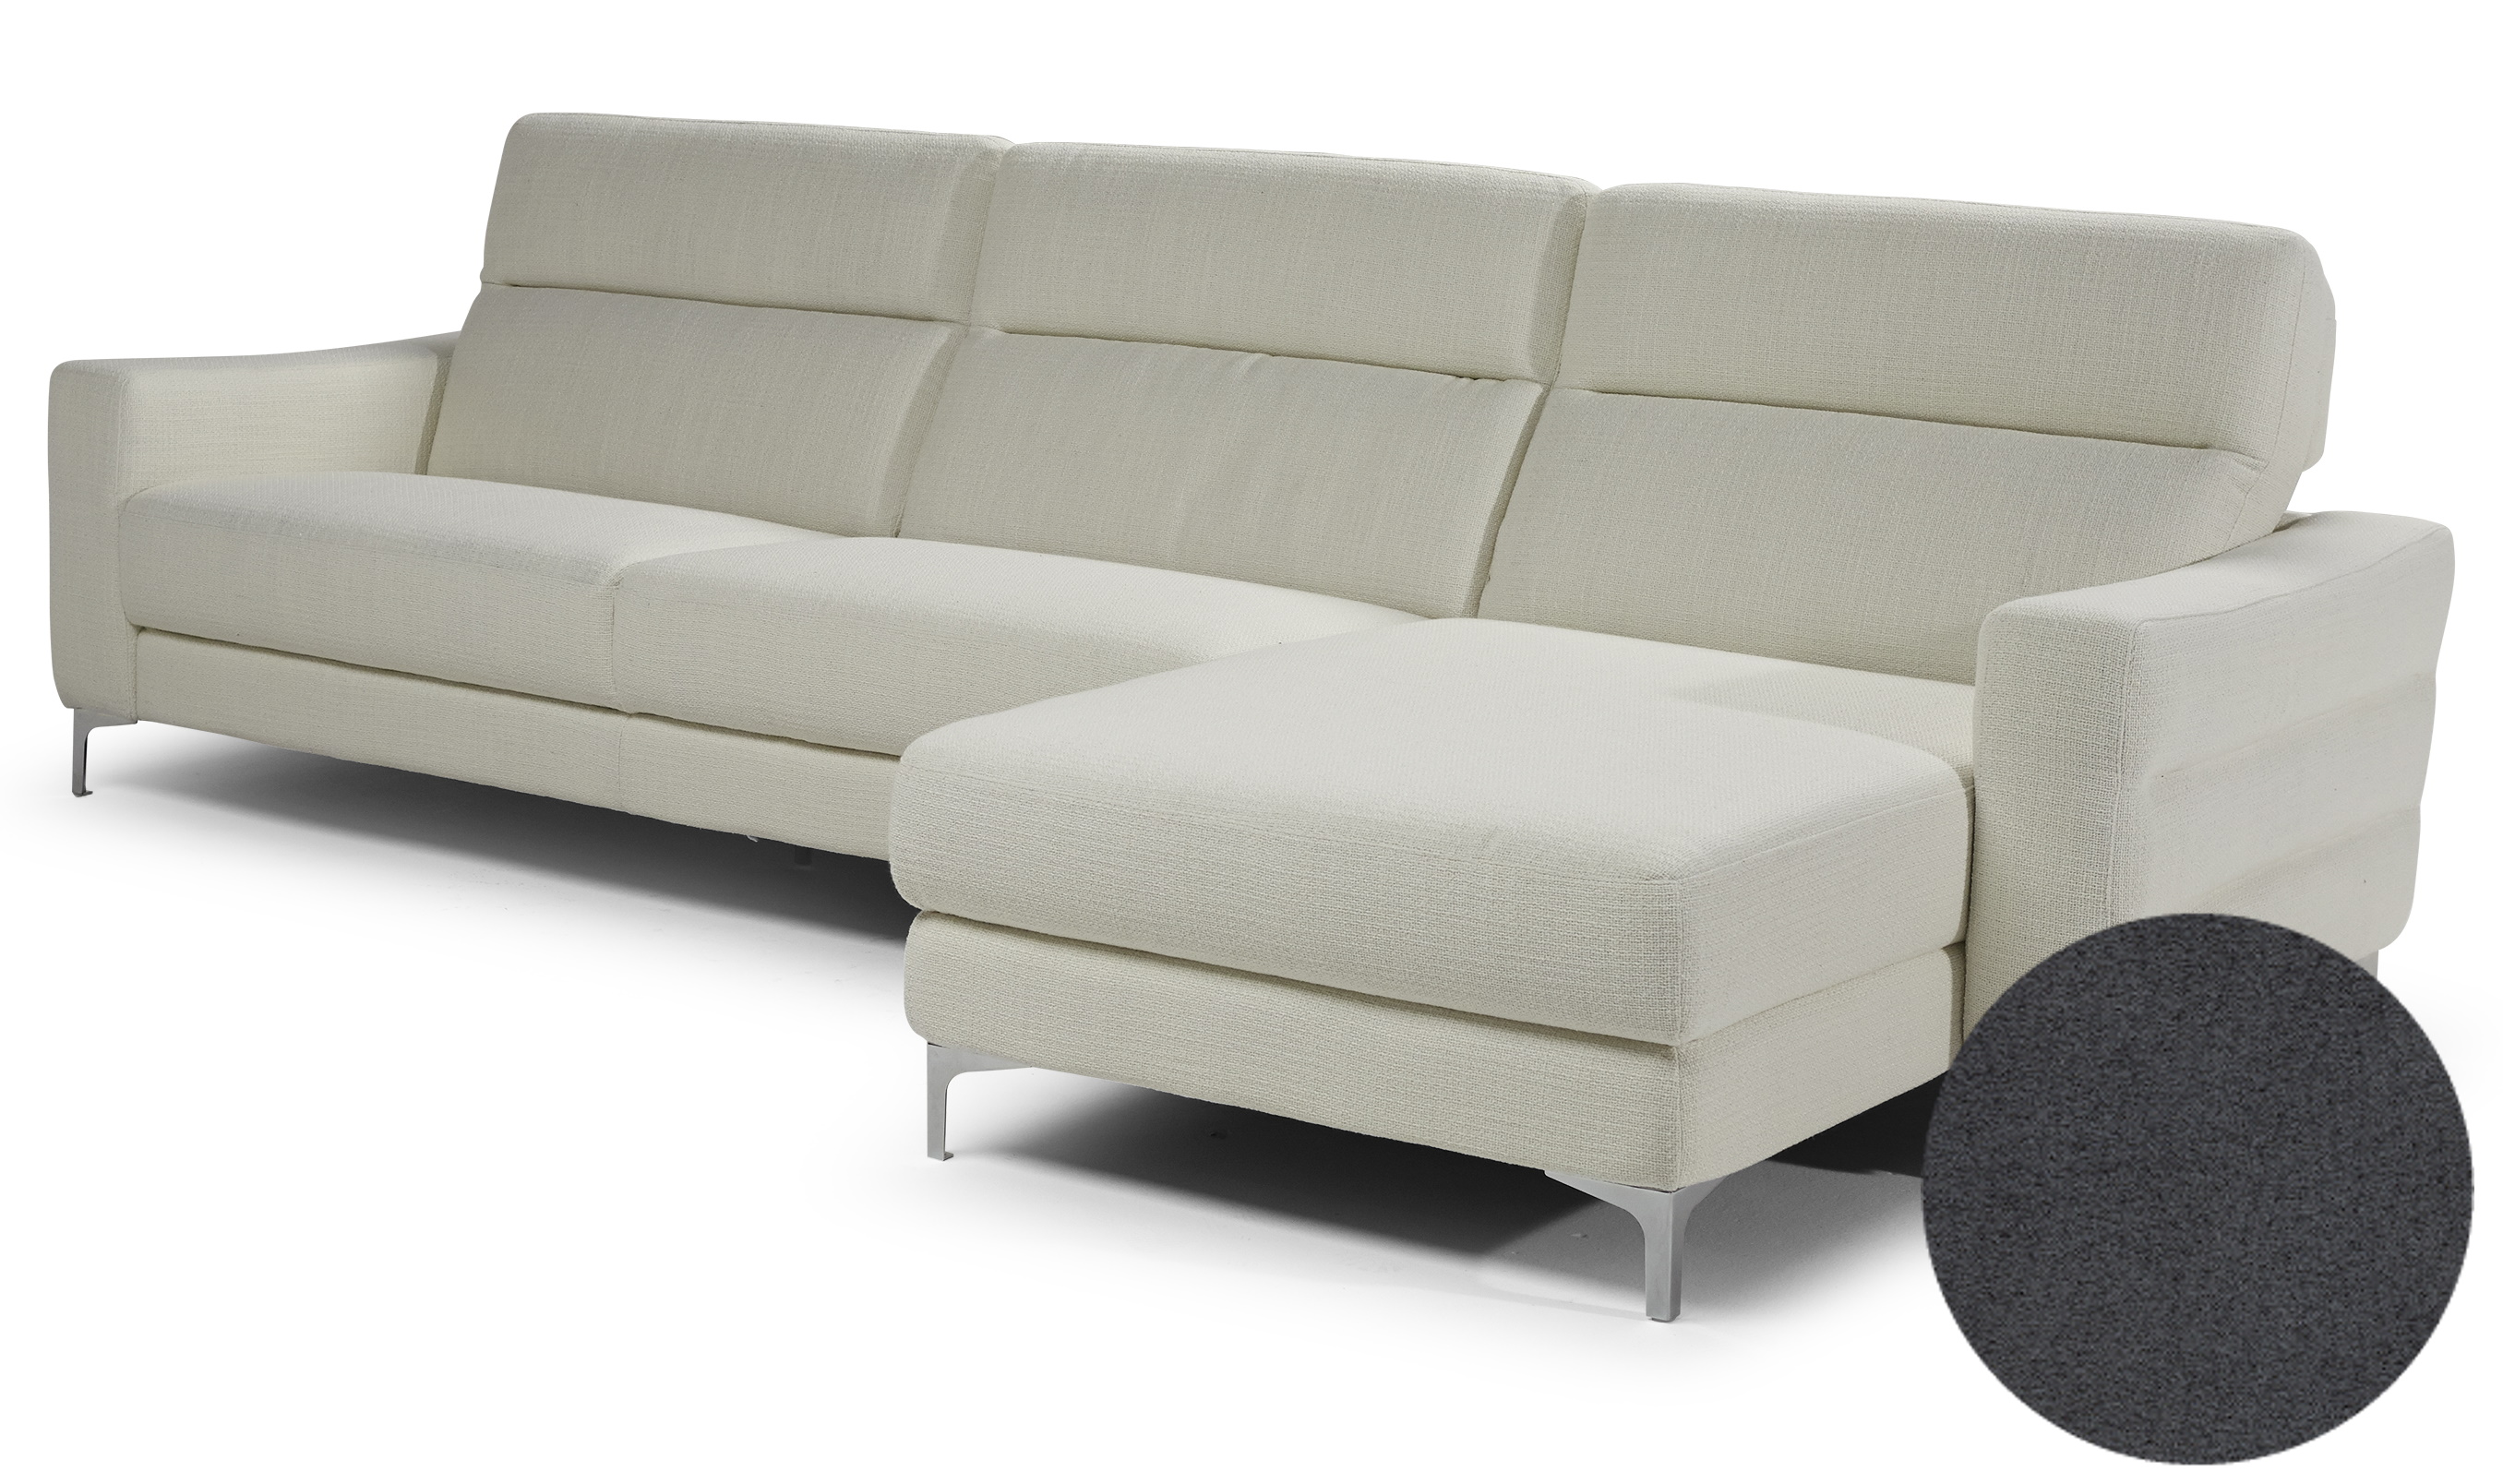 Canapea de colt Softaly Stima B940 orientare dreapta tapiterie Mattinata gri 01 B940 imagine model 2022